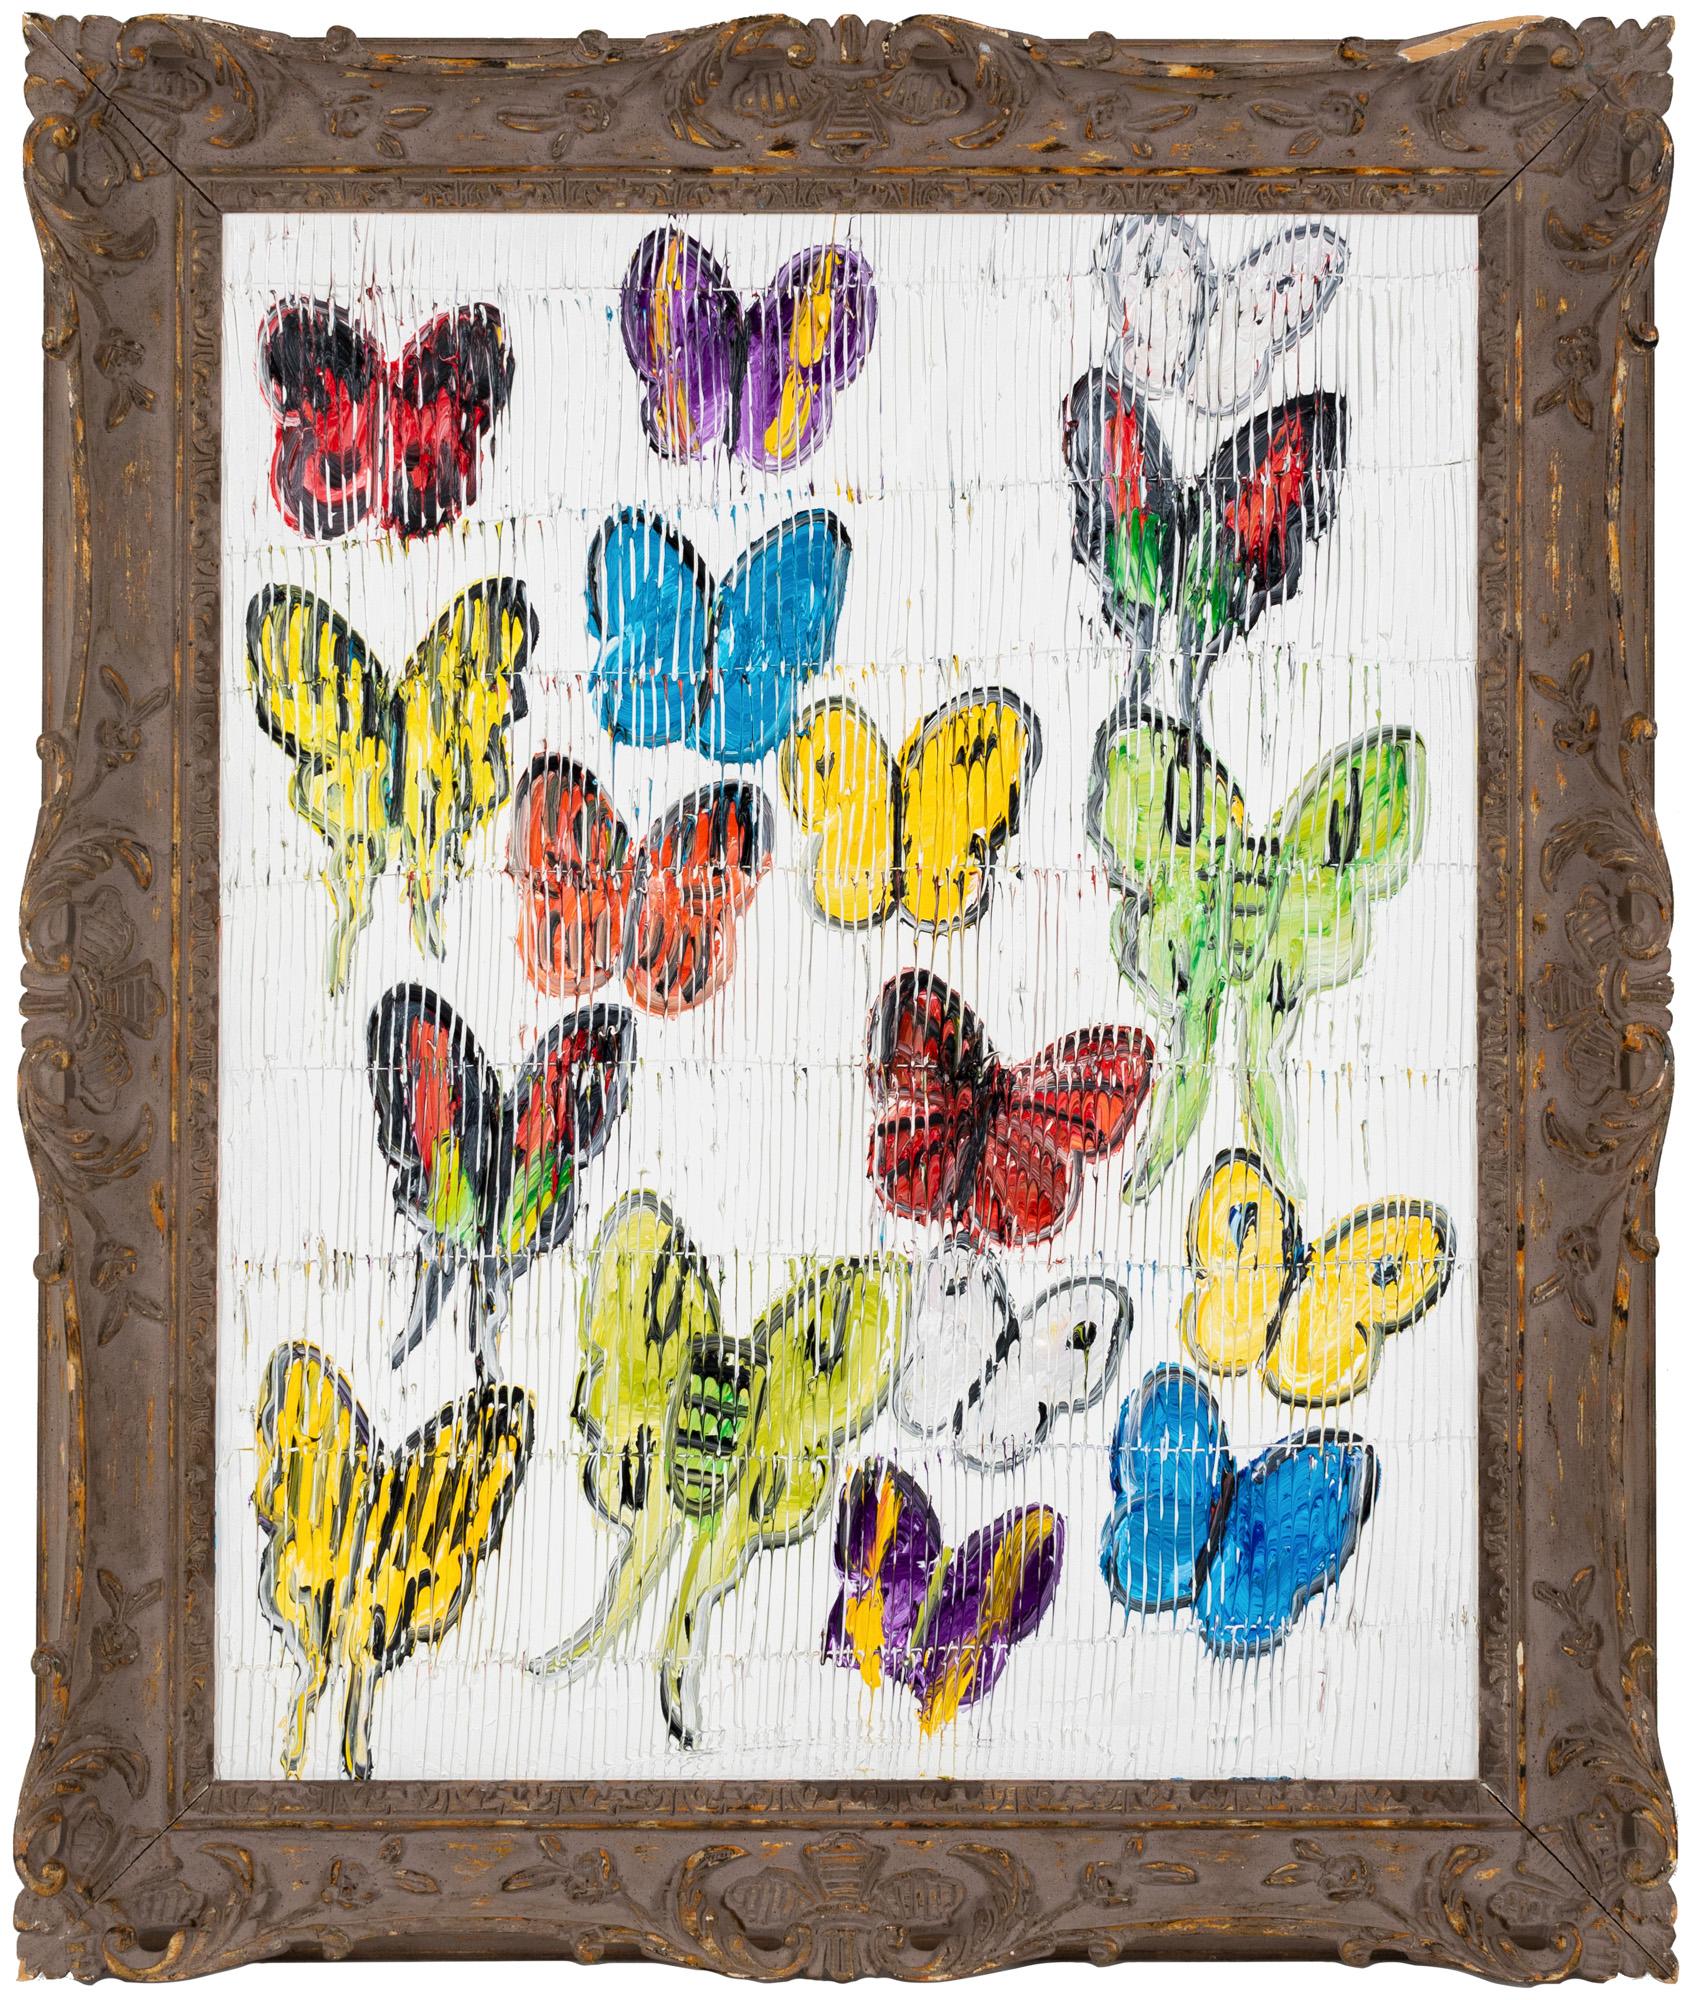 Huile sur toile « Summerland » encadrée de papillons néoexpressionnistes de Hunt Slonem